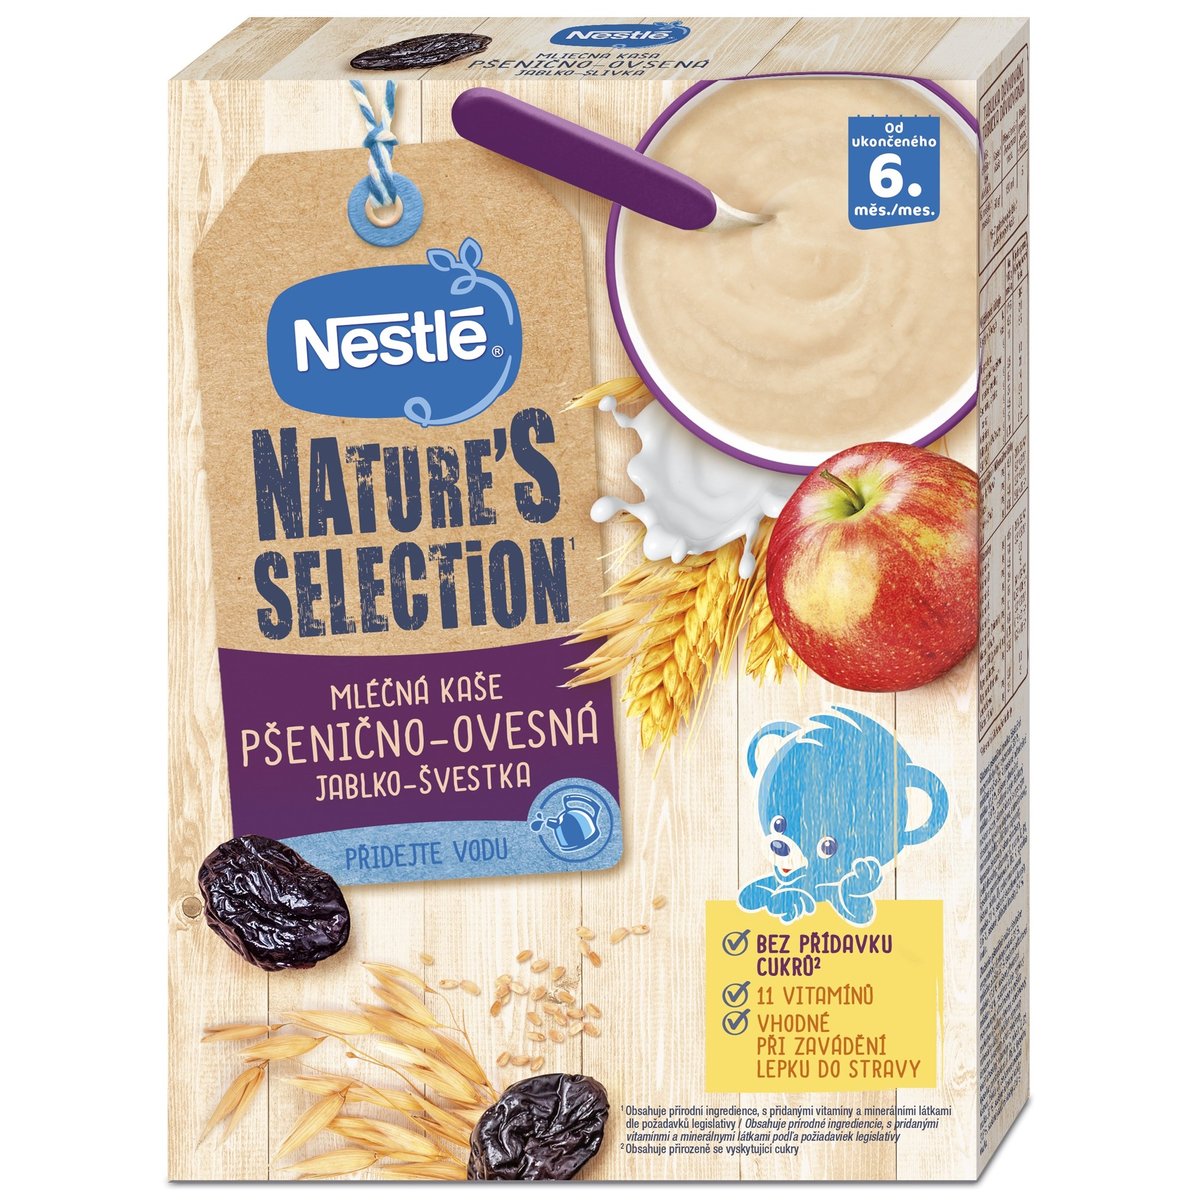 Nestlé Nature's selection Mléčná kaše pšenično-ovesná jablko a švestka